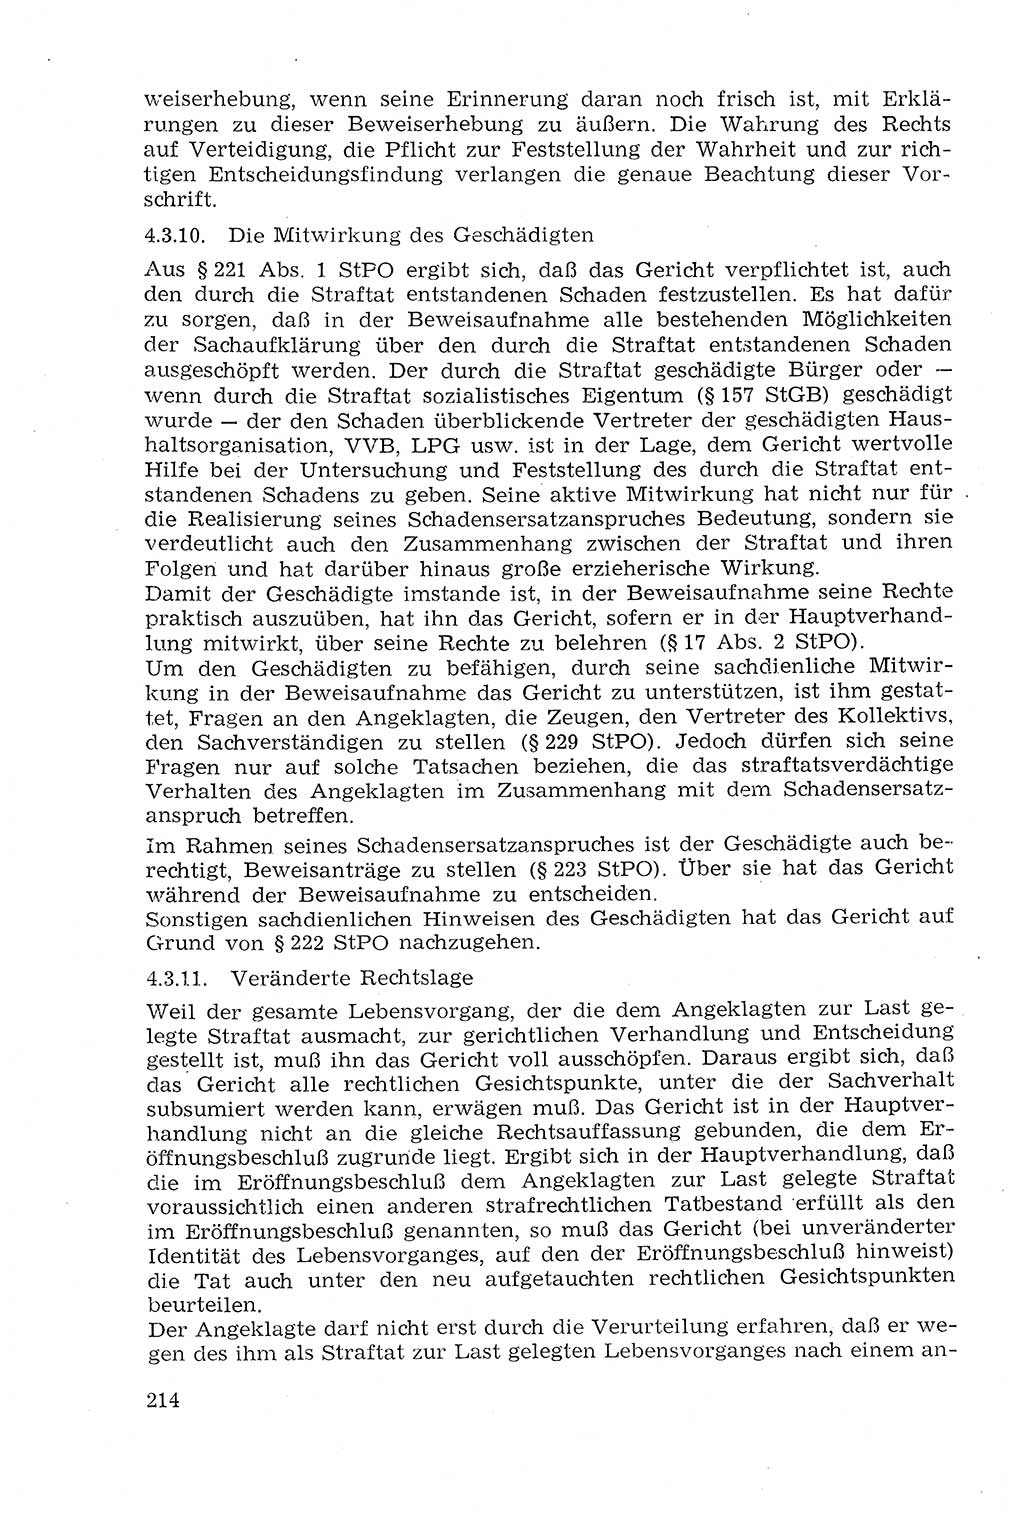 Strafprozeßrecht der DDR (Deutsche Demokratische Republik), Lehrmaterial 1969, Seite 214 (Strafprozeßr. DDR Lehrmat. 1969, S. 214)